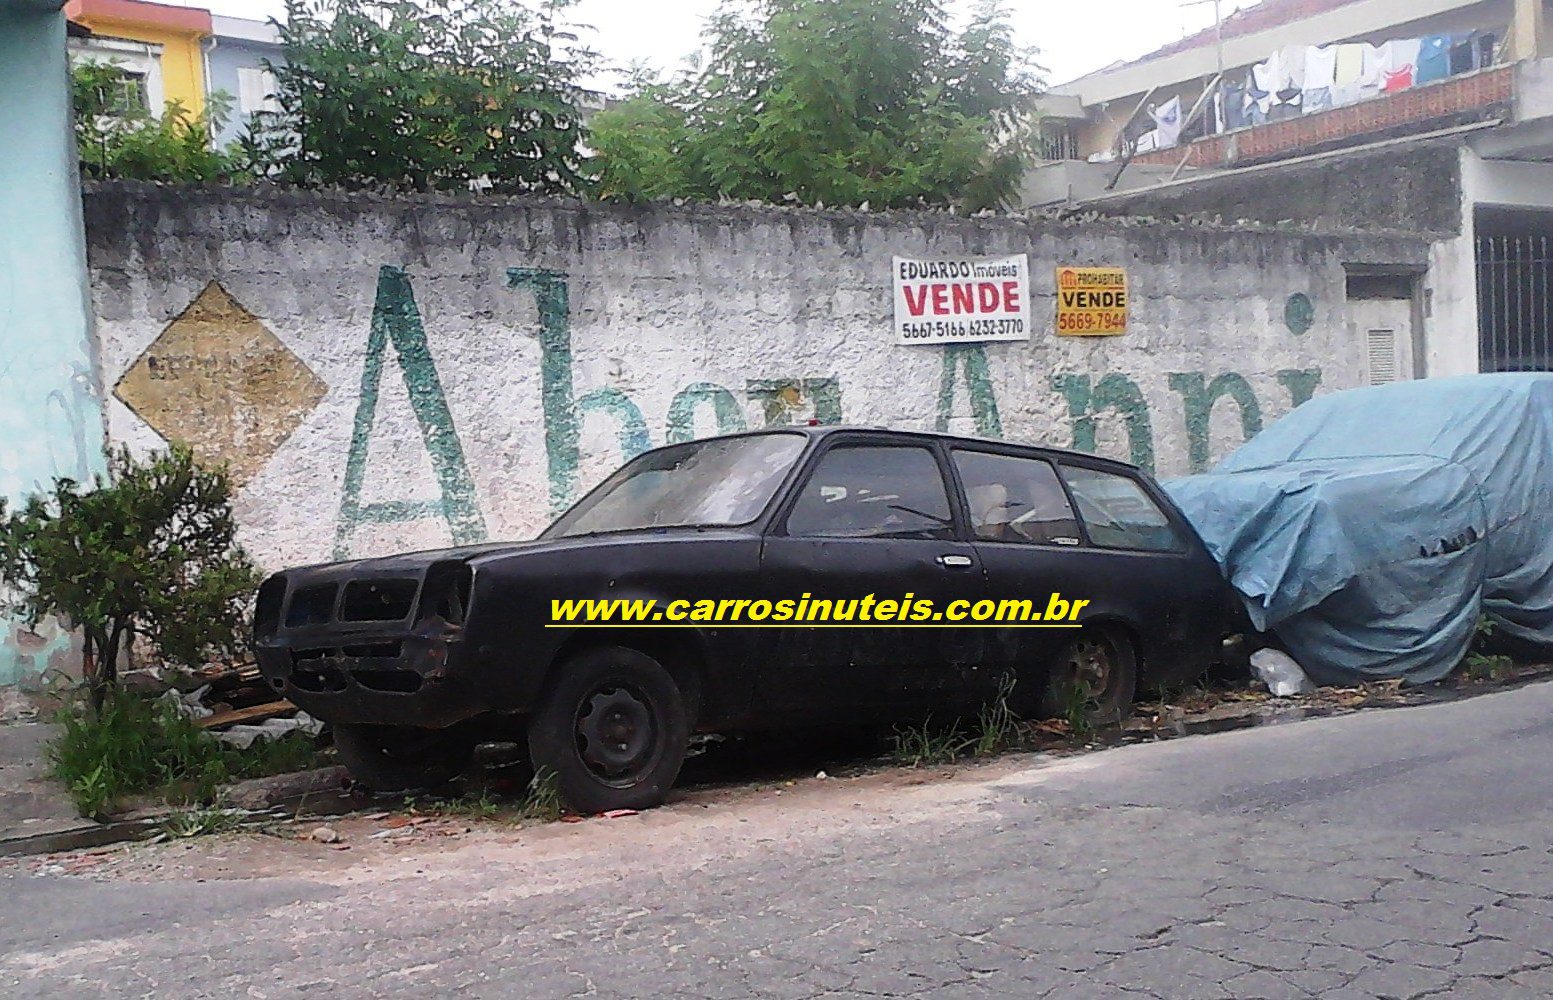 Chevrolet Marajó, Rodolfo, cidade de São Paulo, SP